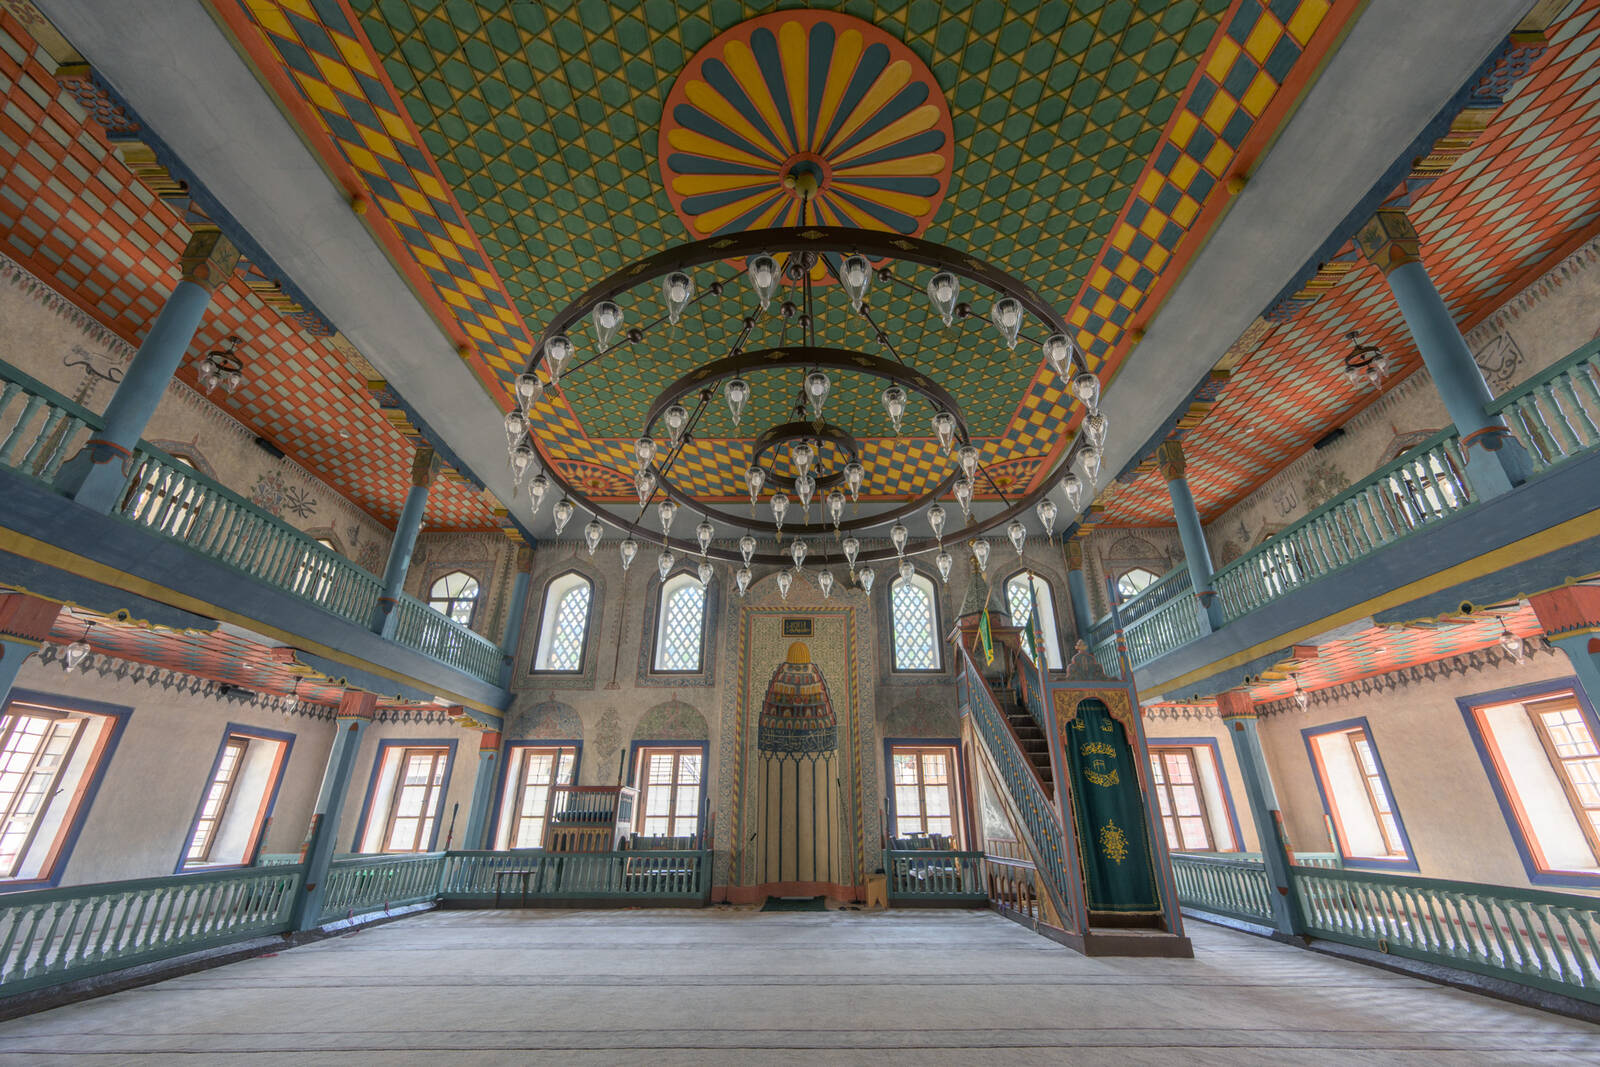 Image of Šarena Džamija (Painted Mosque) by Luka Esenko